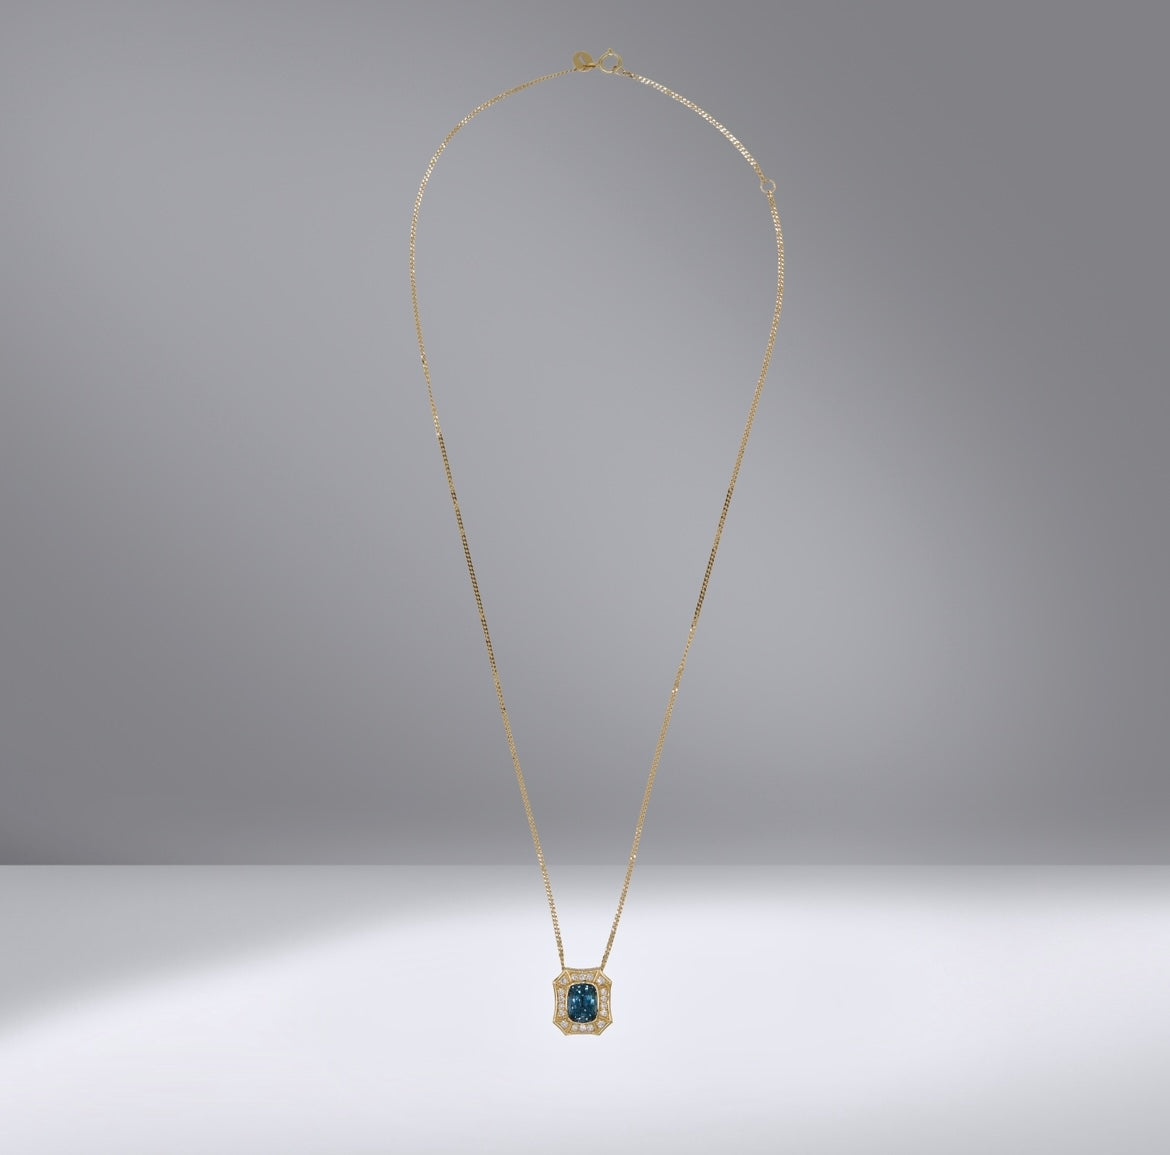 Color Sapphire Pendant Necklace